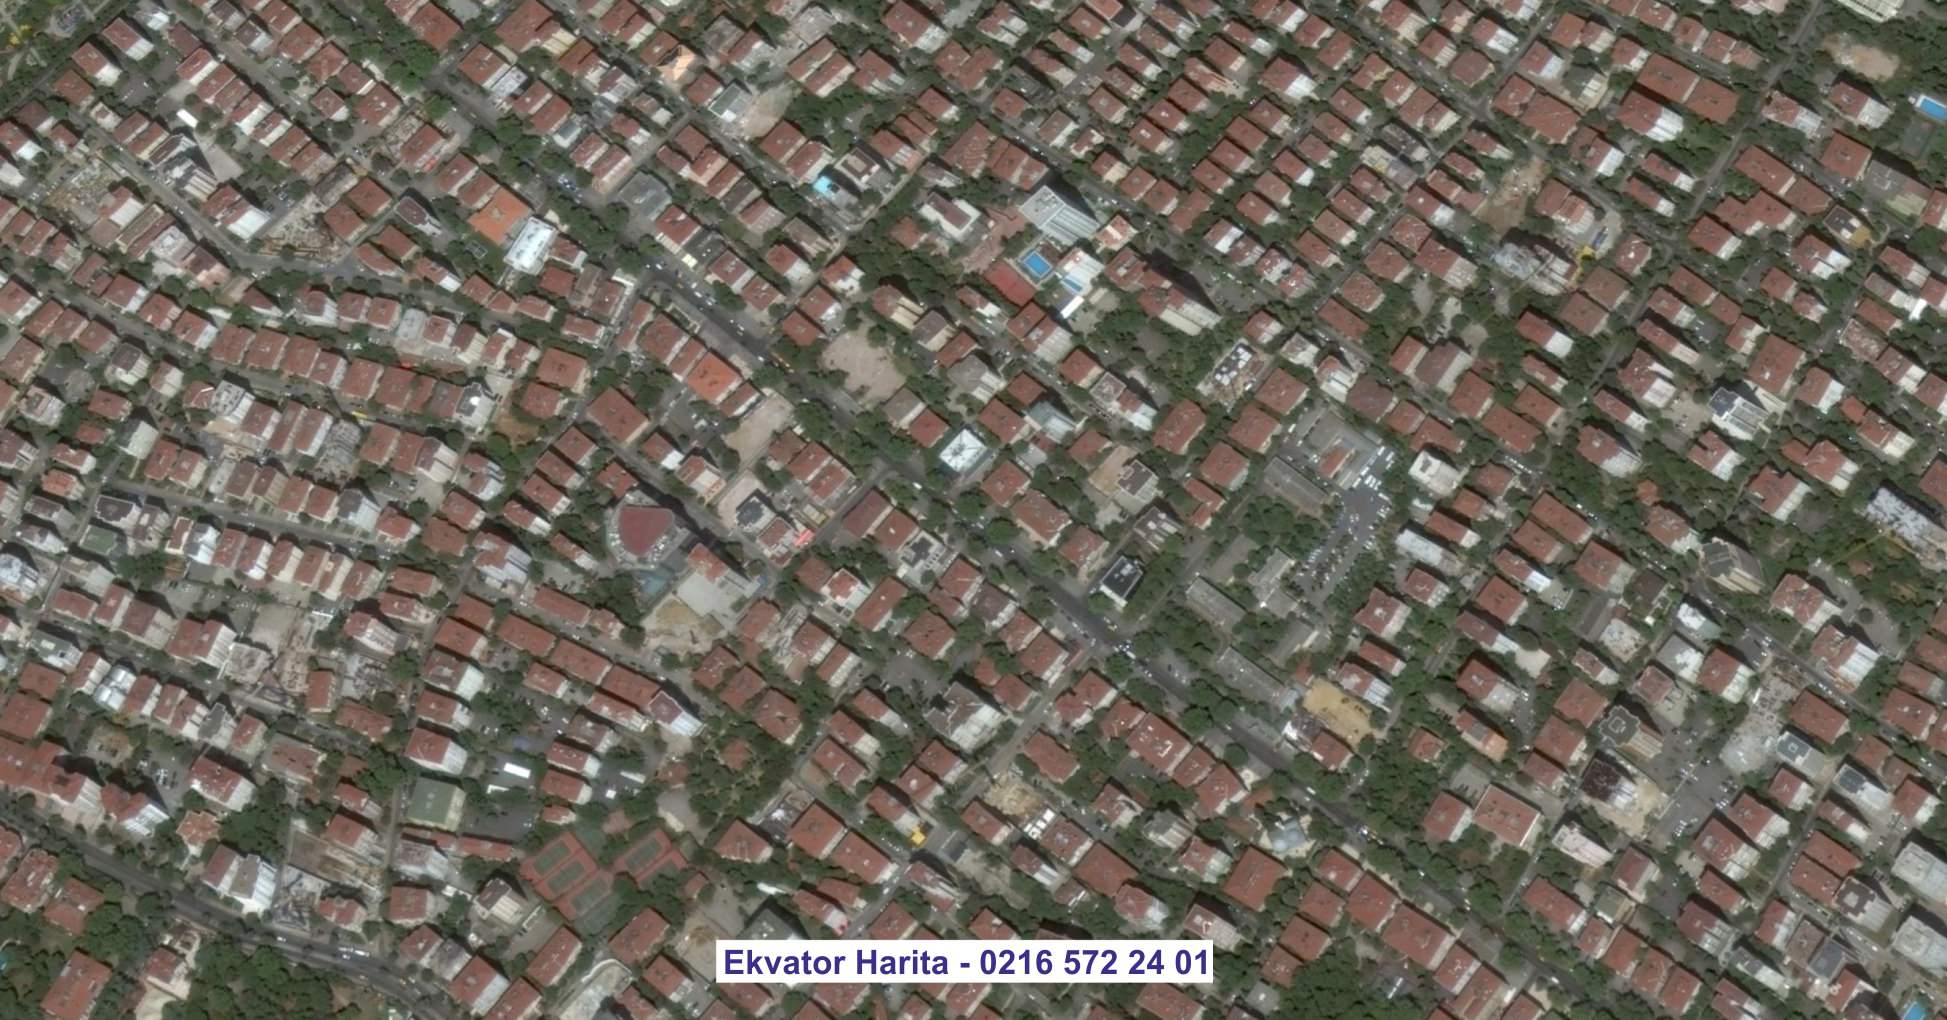 Aşkabad Uydu Görüntüsü Örnek Fotoğrafı